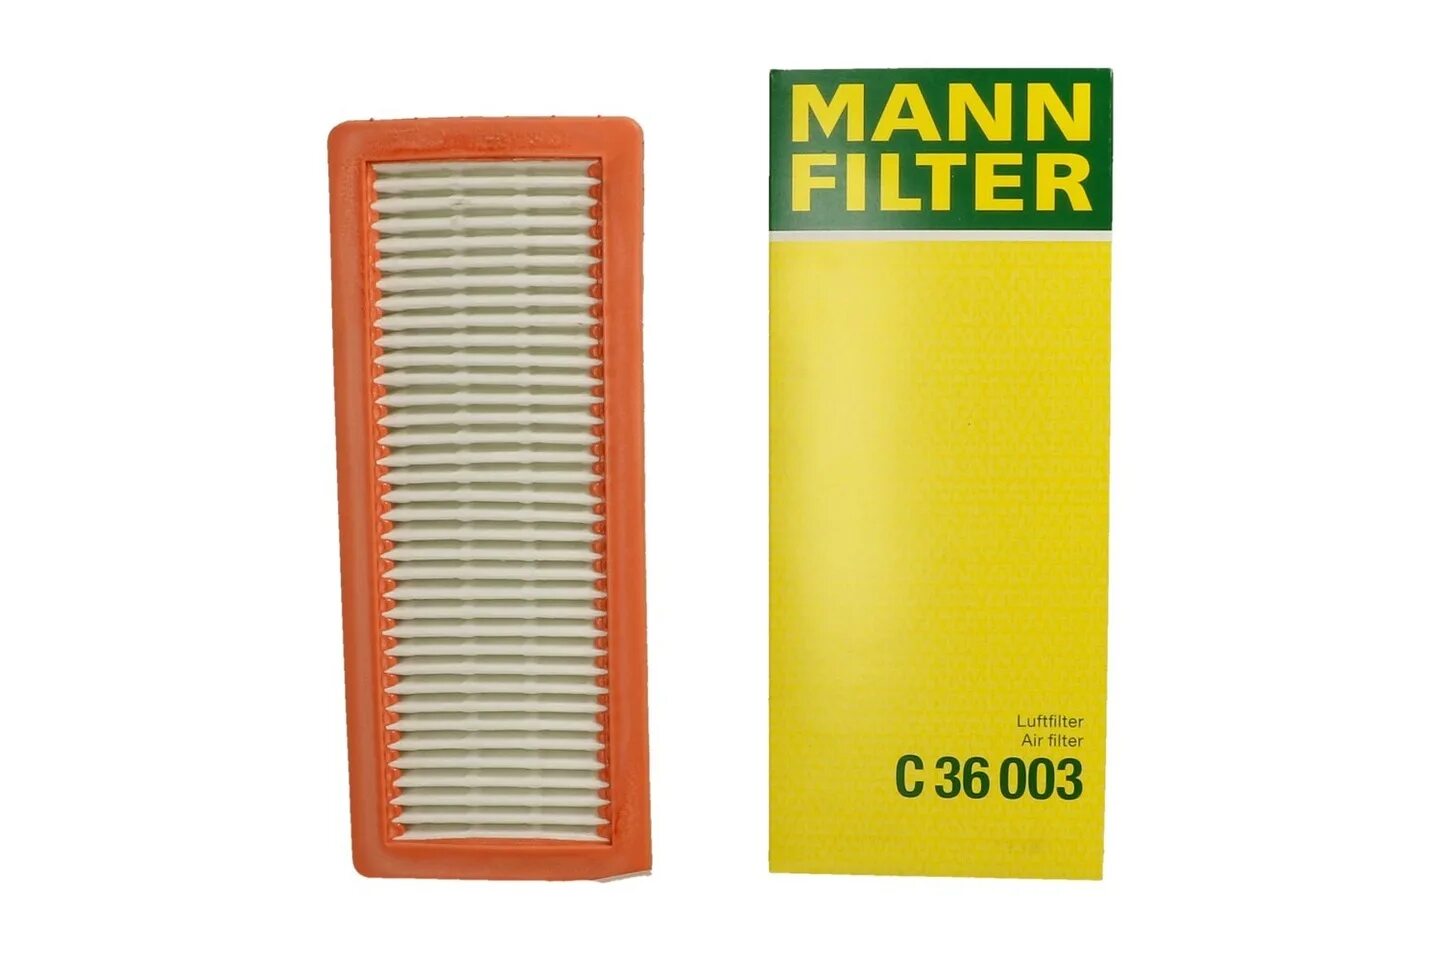 Купить фильтр воздушный мерседес. Фильтр воздушный Mann c 3397. Cf810 Mann-Filter фильтр возд.Mercedes. E152l HENGST Filter воздушный фильтр. Mann c3397.